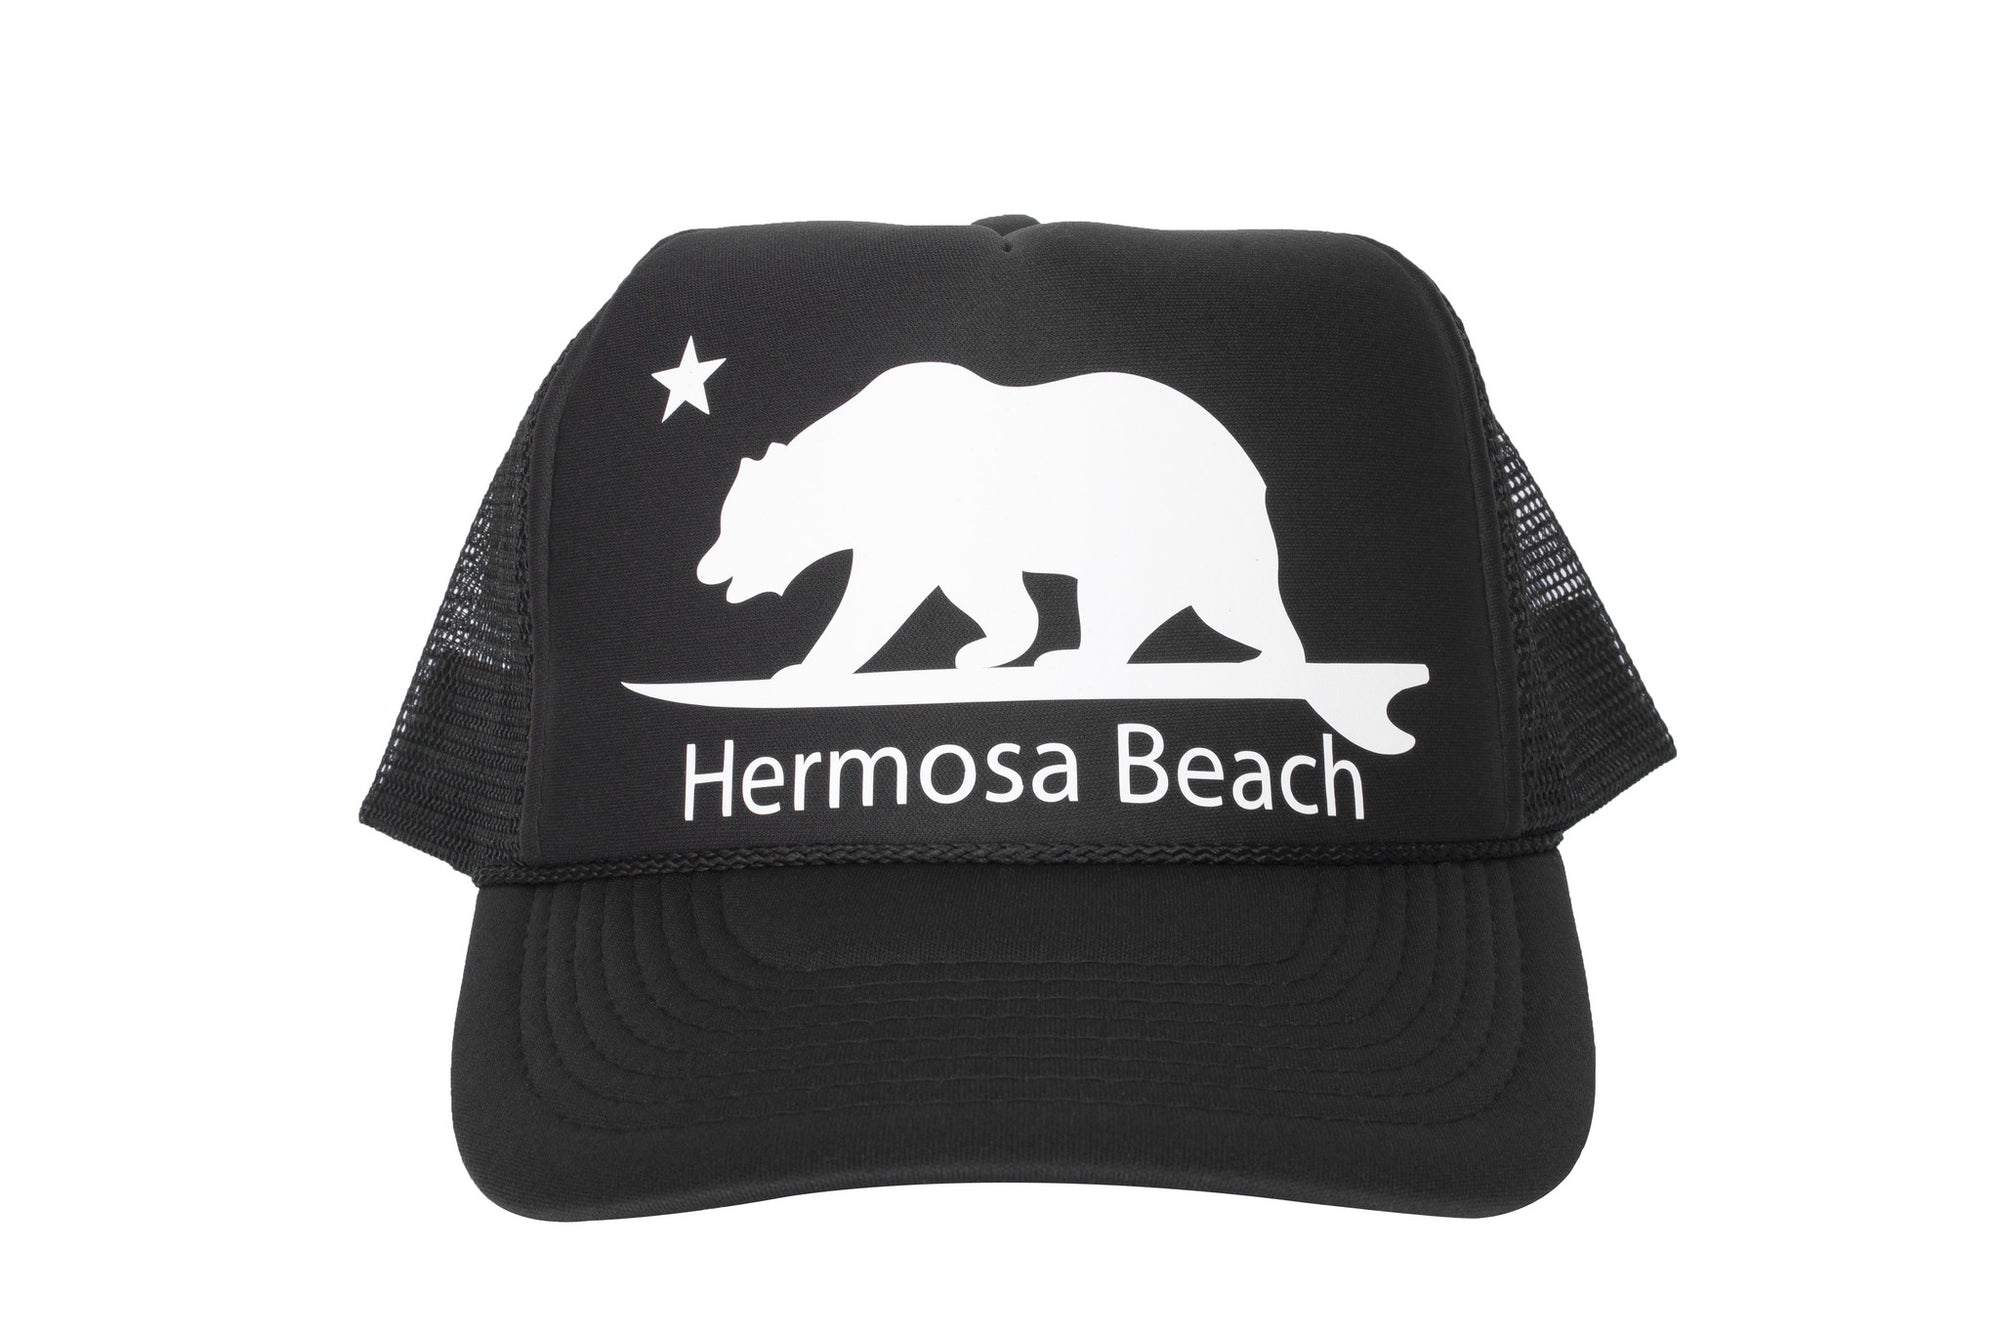 Hermosa Beach Surfbear®